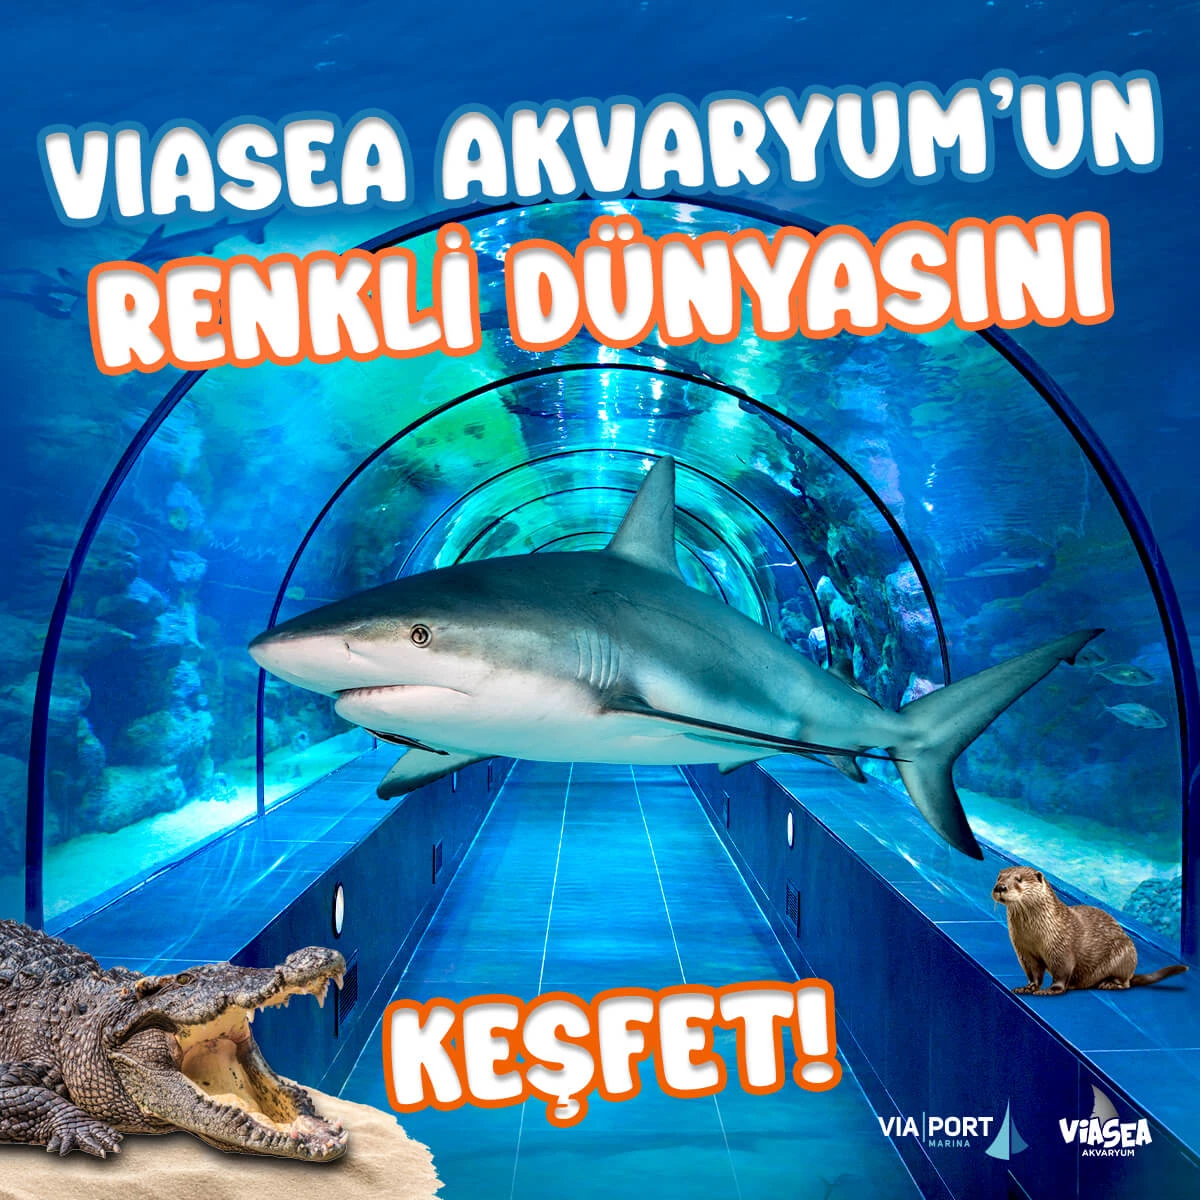 Viasea Aquarium Ticket - 2